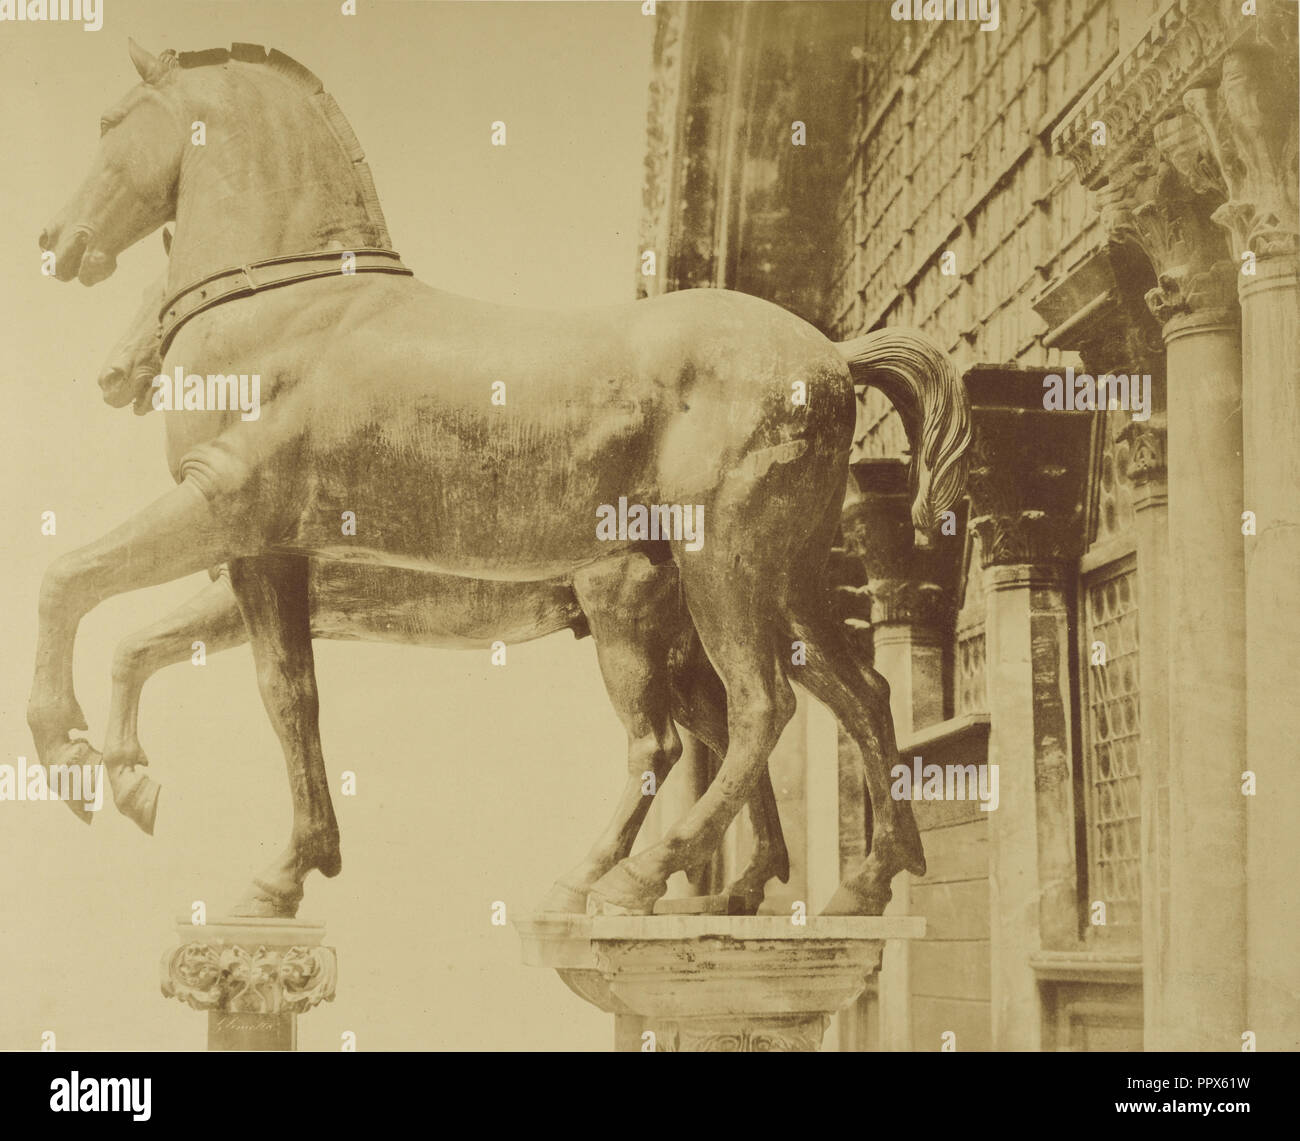 Statues de chevaux ; Glimette français, actif, 19e siècle, Londres, Angleterre ; vers 1855 - 1895, à l'albumine argentique Banque D'Images